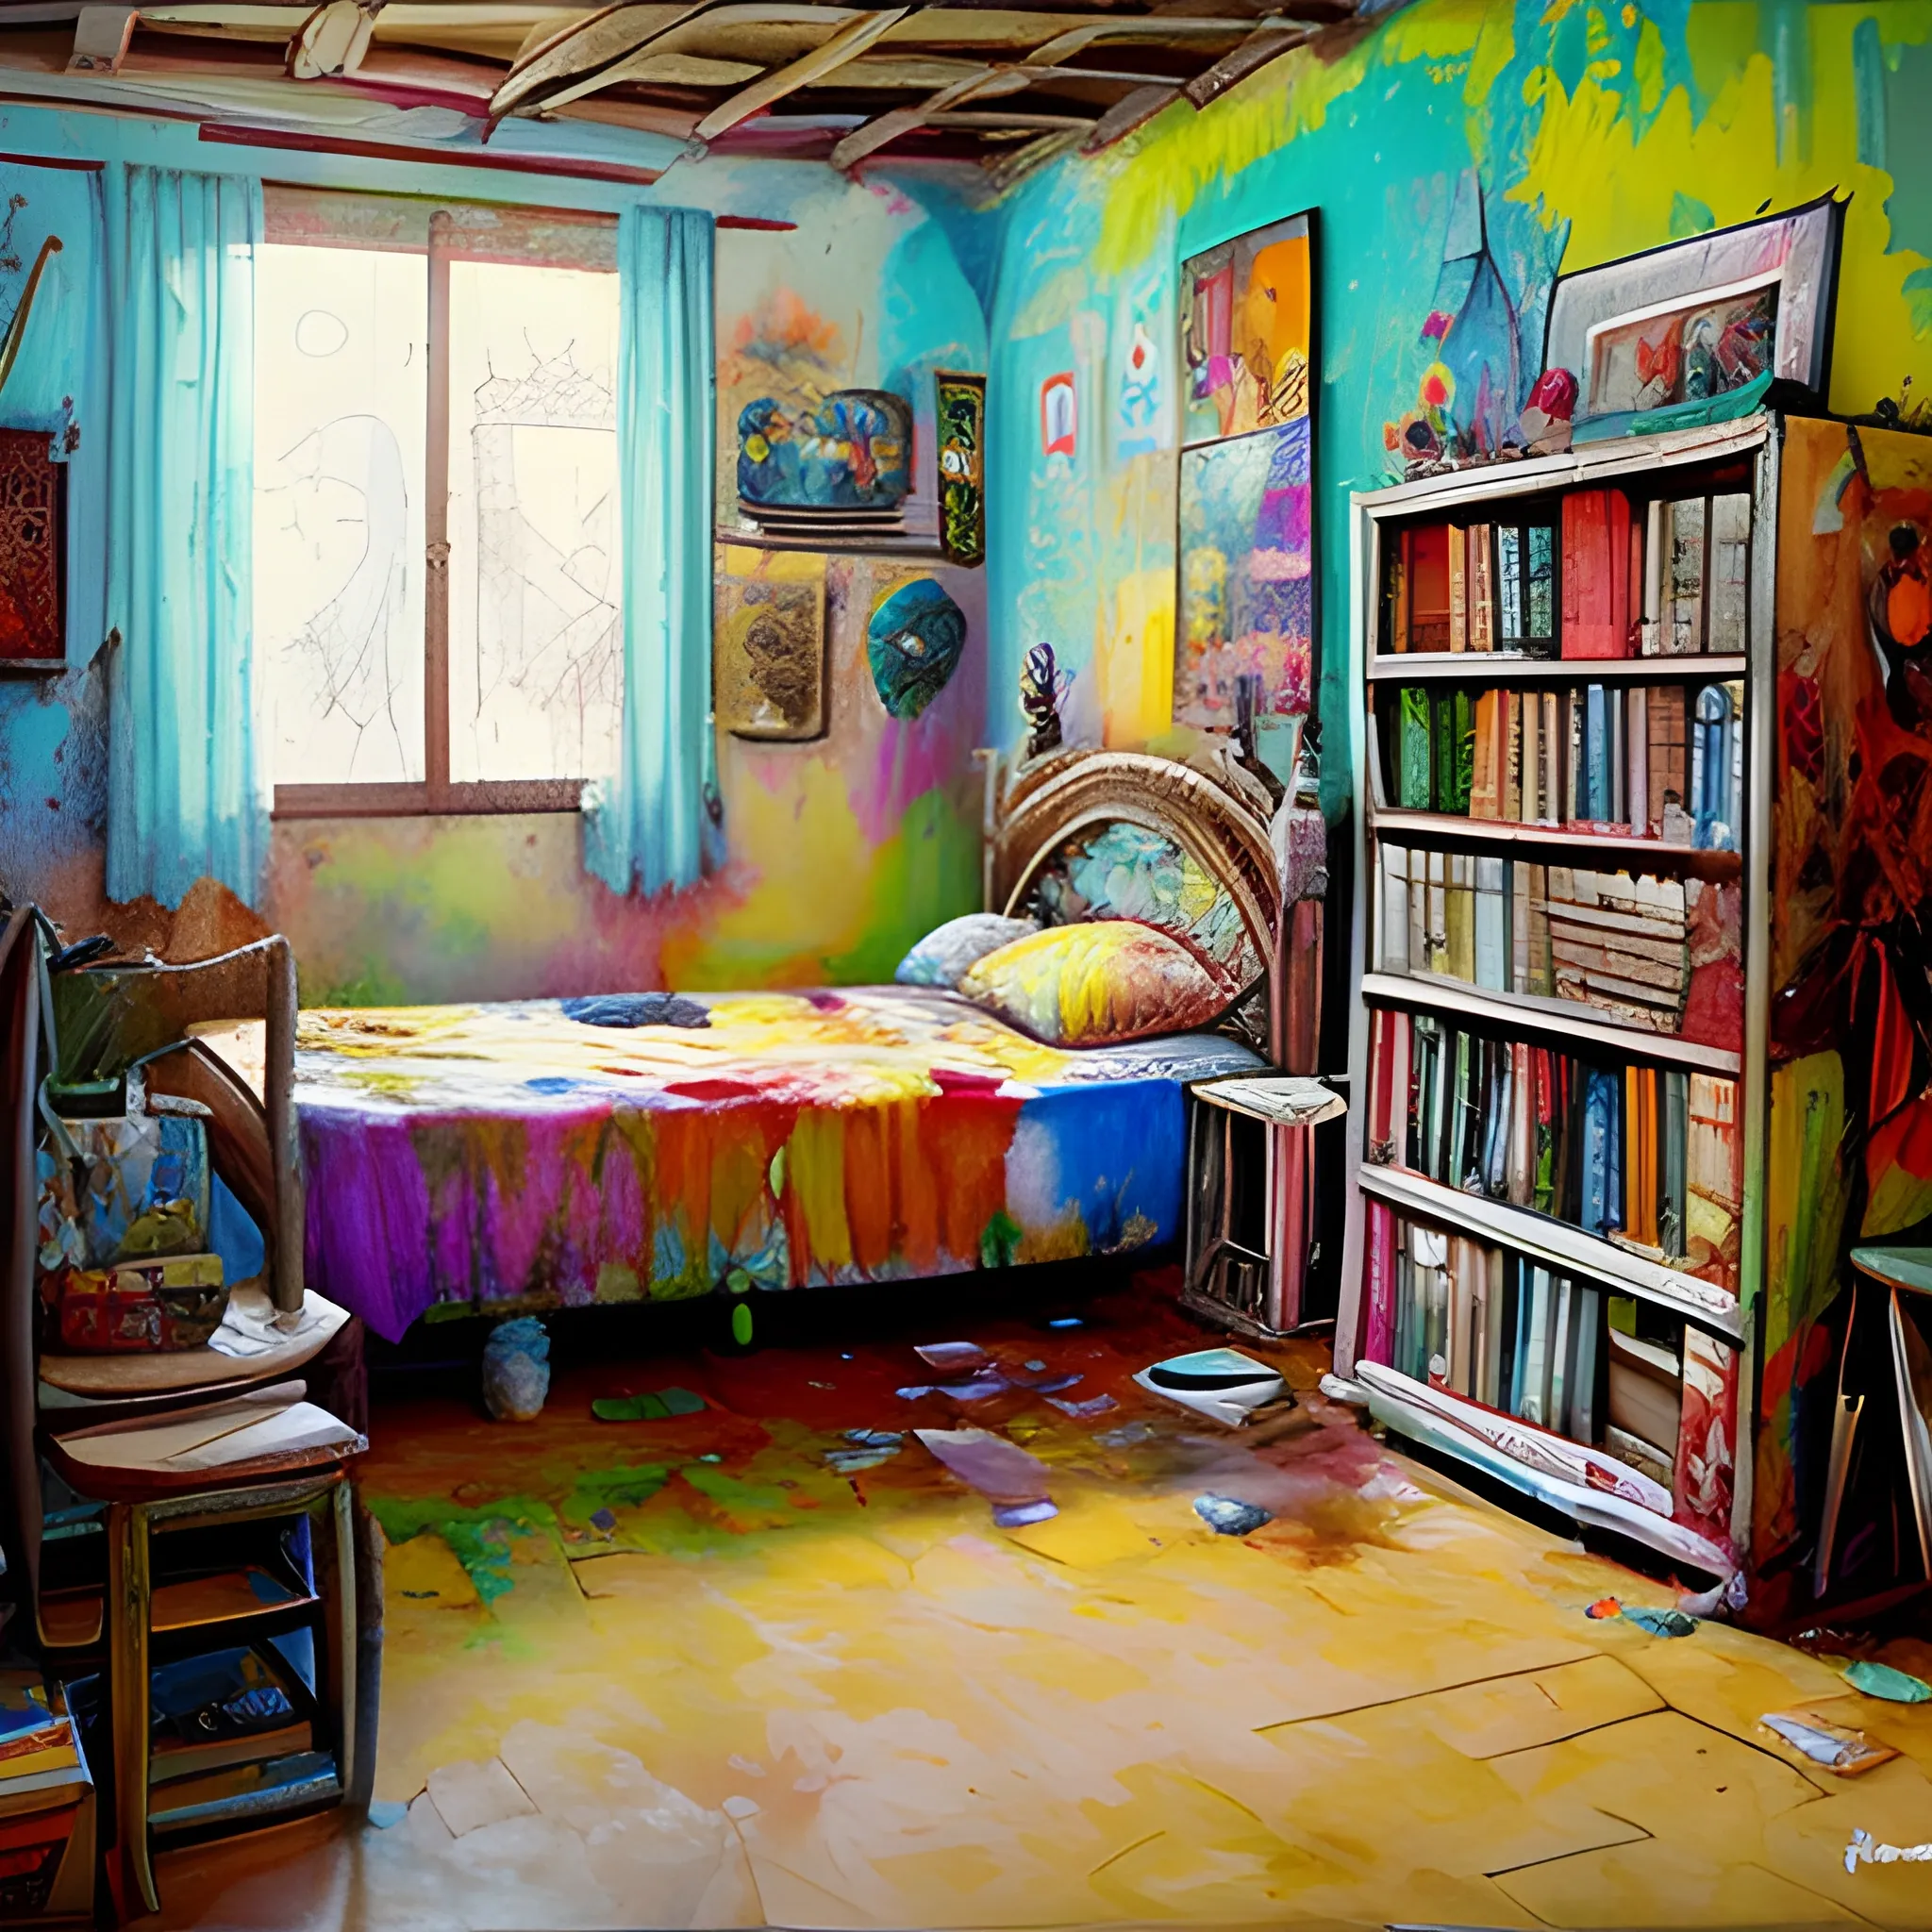 habitacion con muchas pinturas, muchos cuadros, colores obscuros,triste